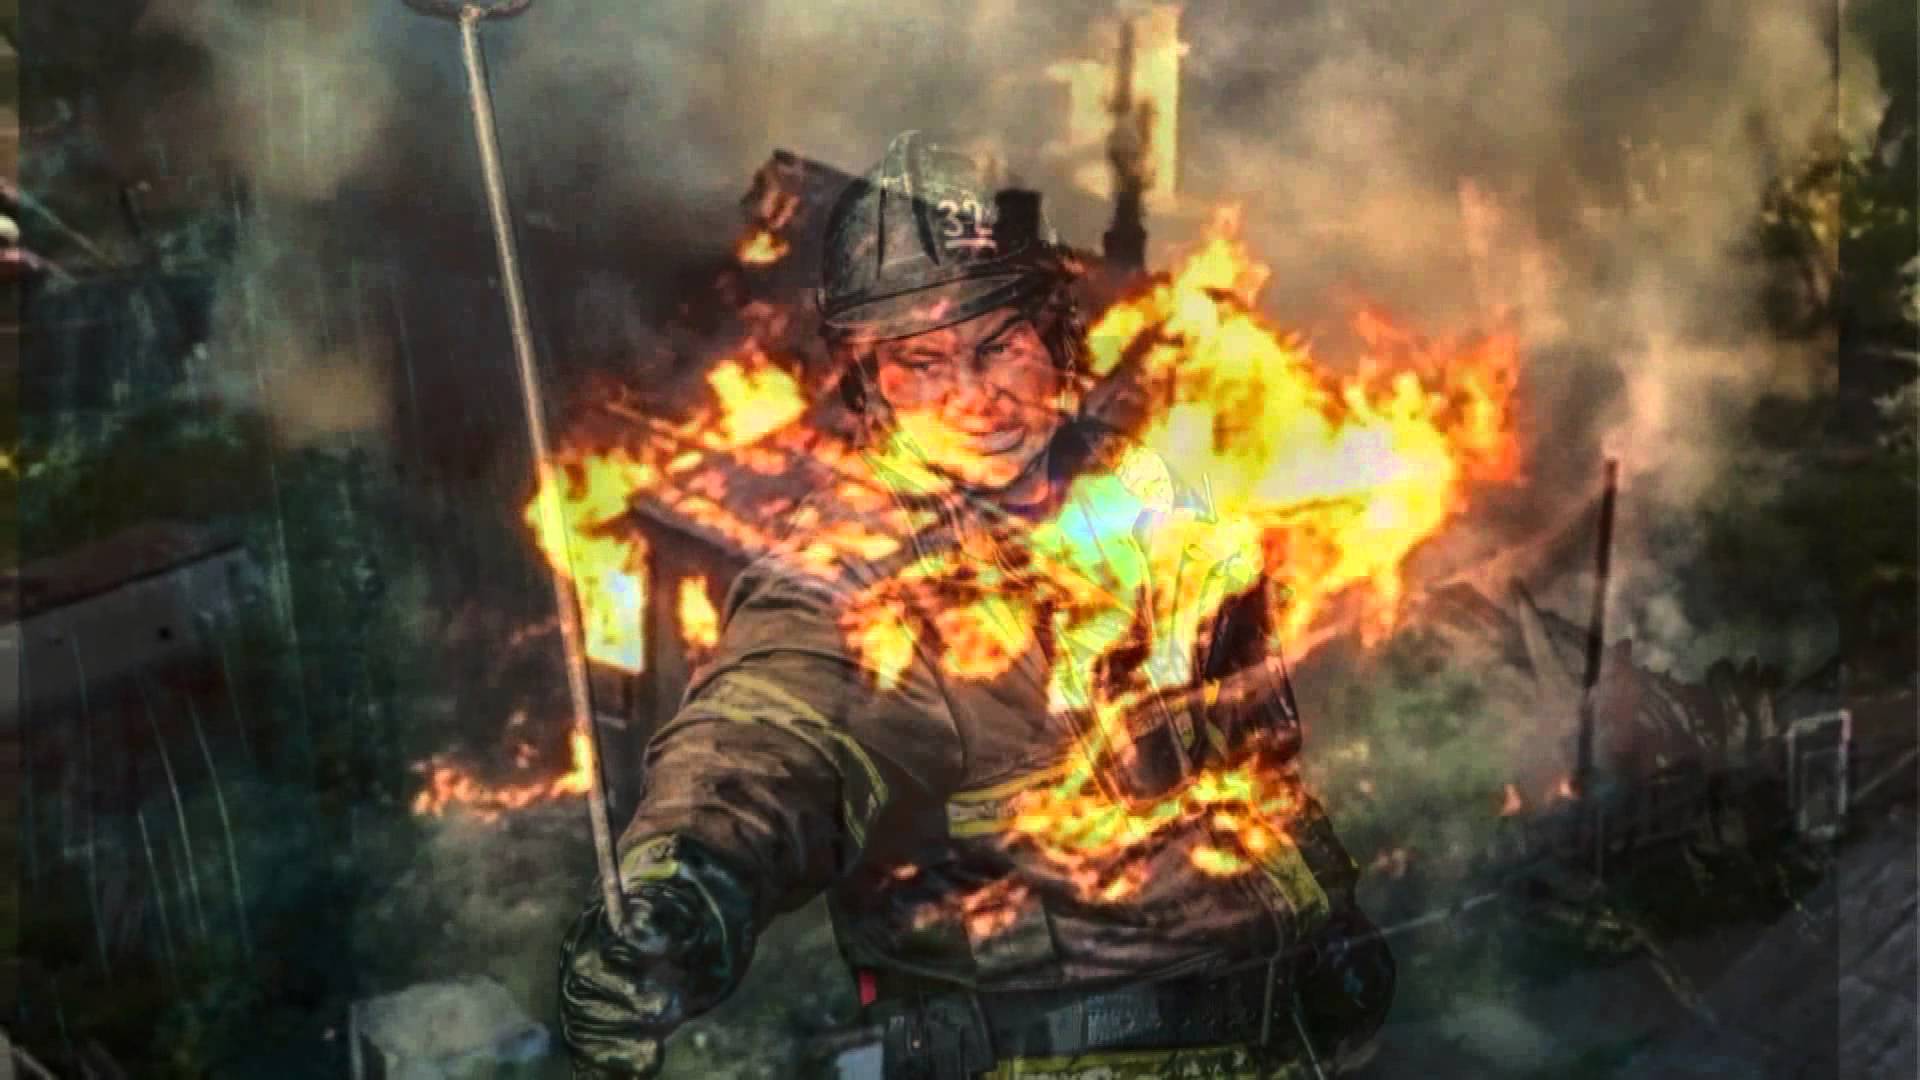 "Хотел добавить работы себе и коллегам": пожарный из Нью-Йорка обвиняется в 5 поджогах